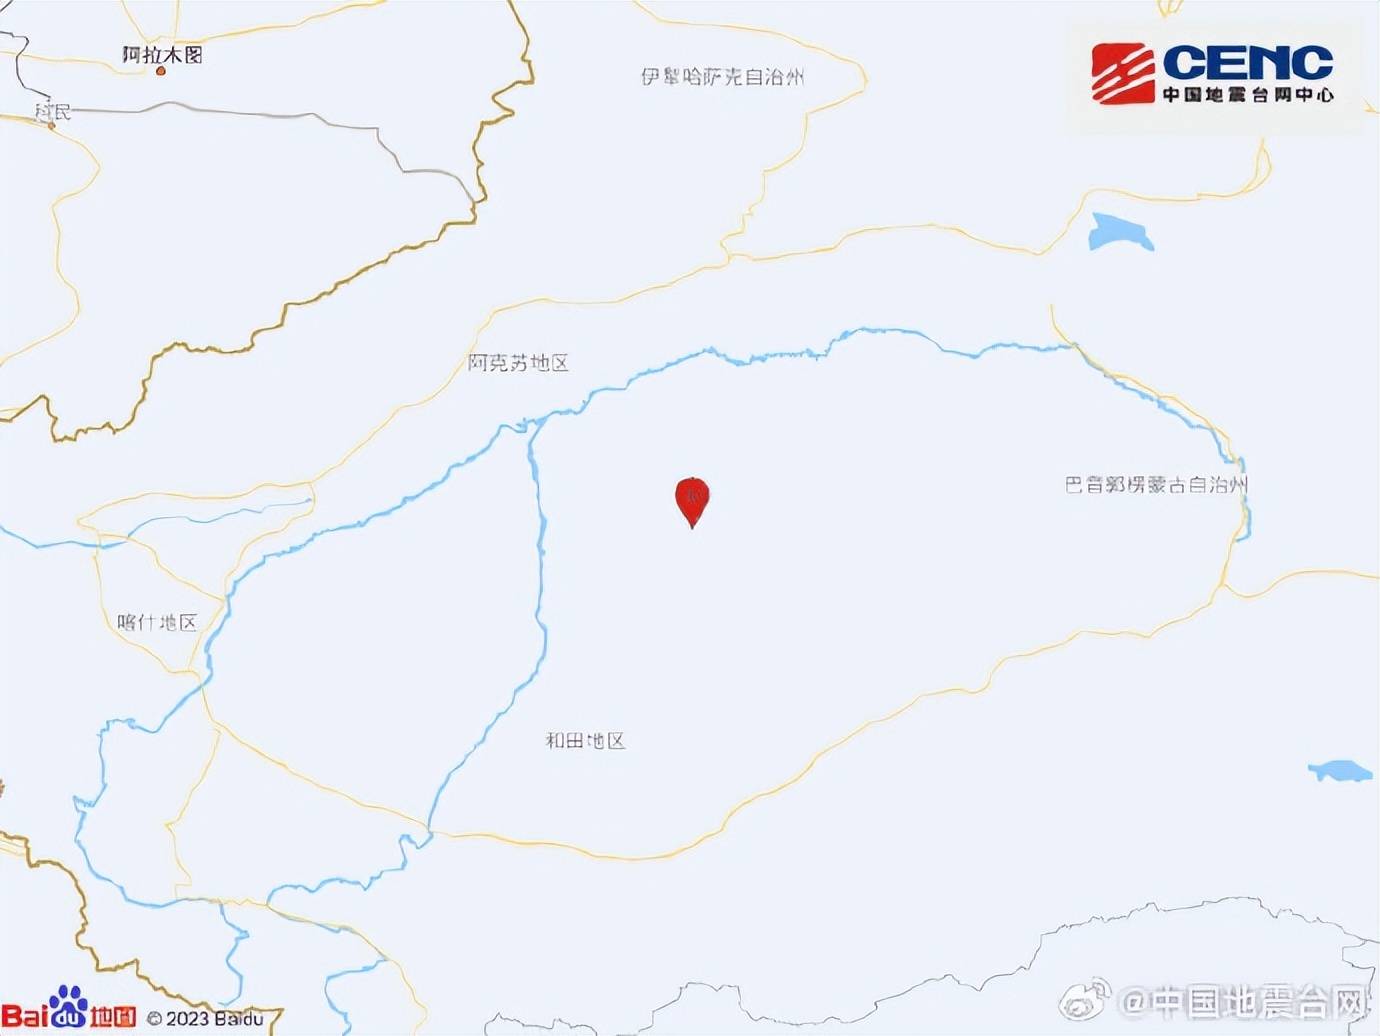 新疆阿克苏地区沙雅县发生3.0级地震